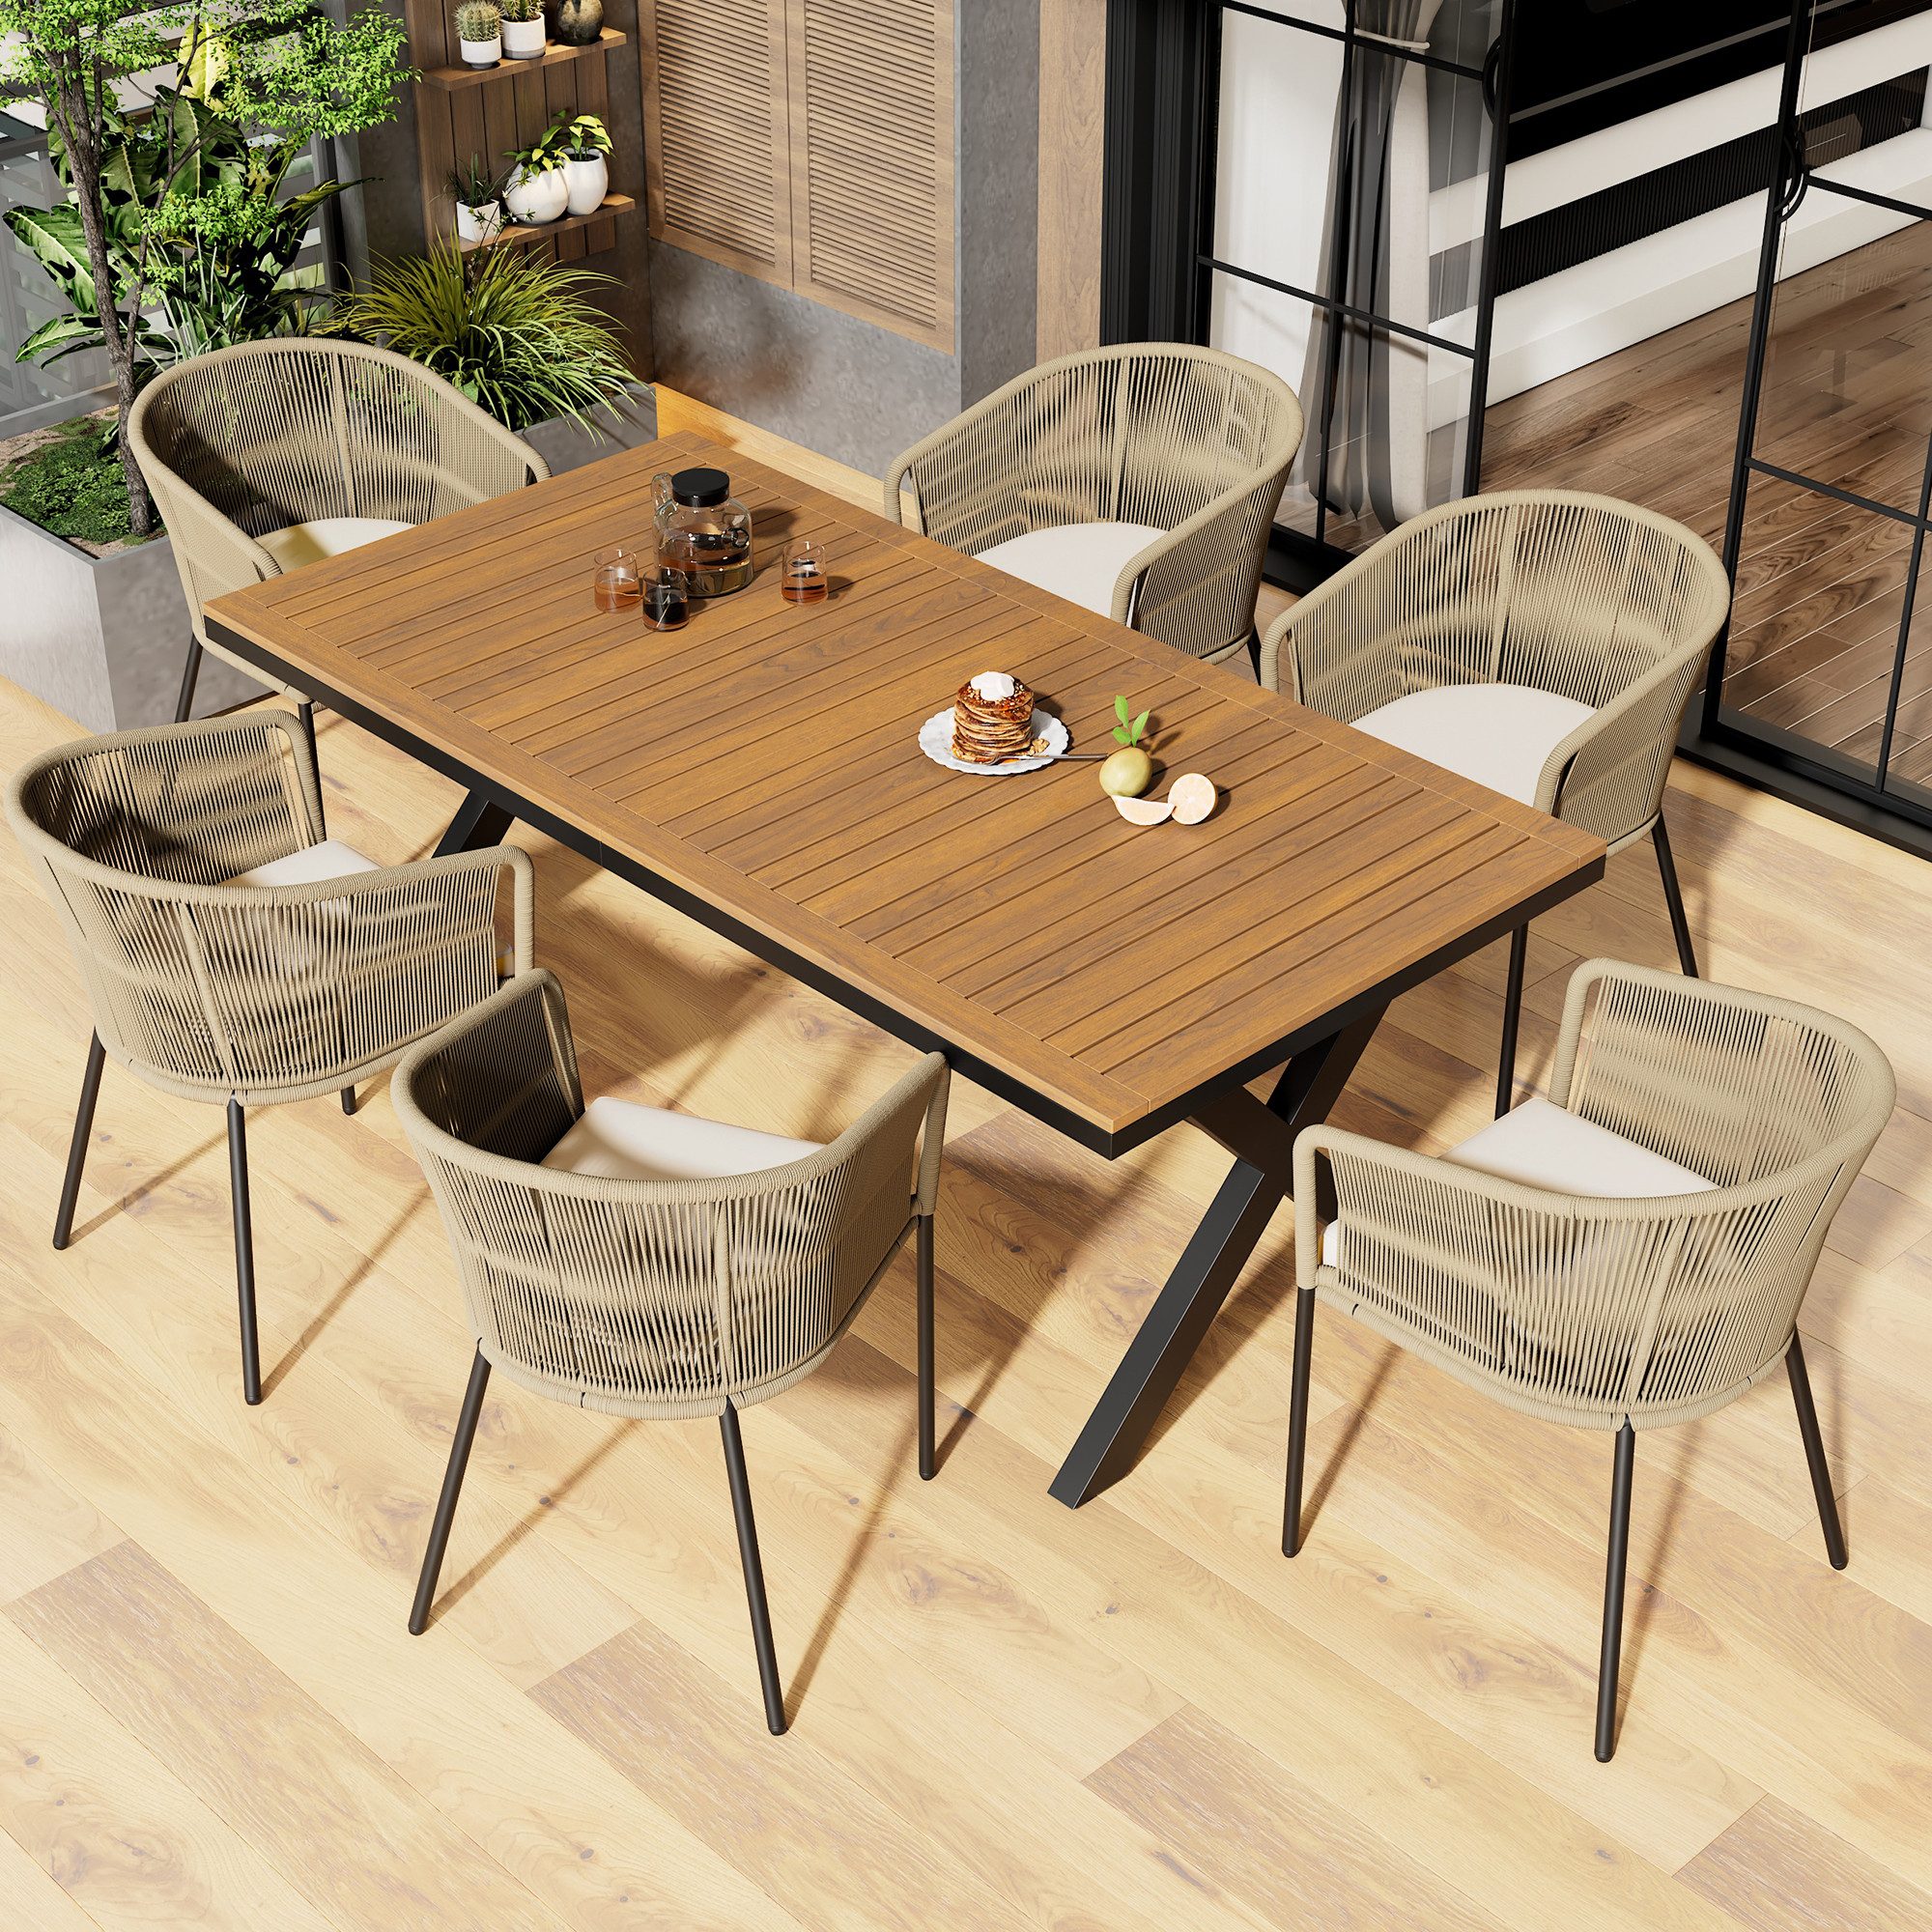 MODFU Garten-Essgruppe Garten-Lounge-Set, (7-tlg., mit 6 Sessel und 1 Tisch, Fußpolstern,sechs Sitzkissen), aus Seil,abnehmbar und waschbar